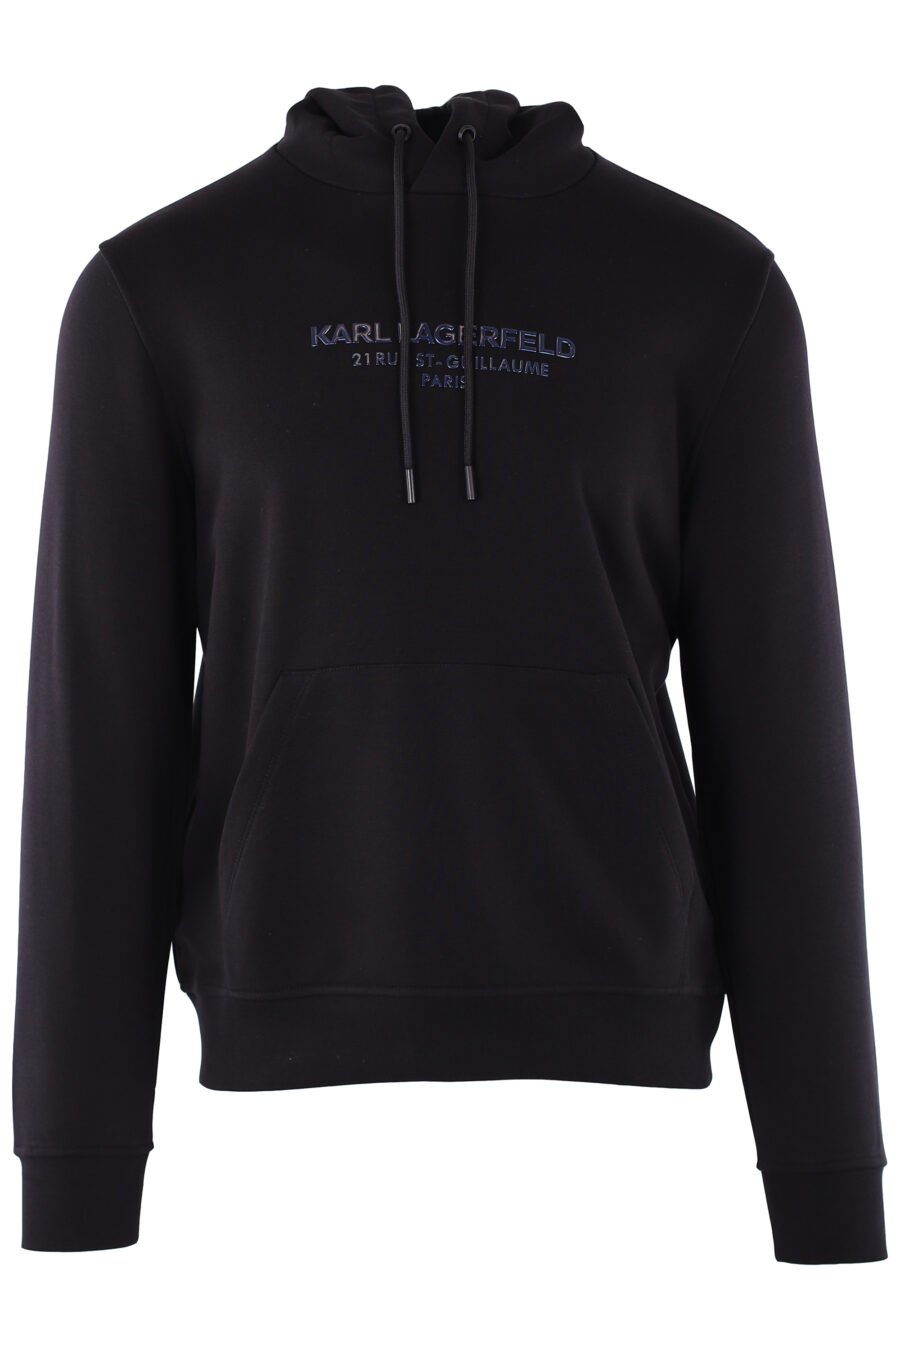 Sweat noir avec capuche et logo métallique bleu "rue st guillaume paris" - IMG 6406